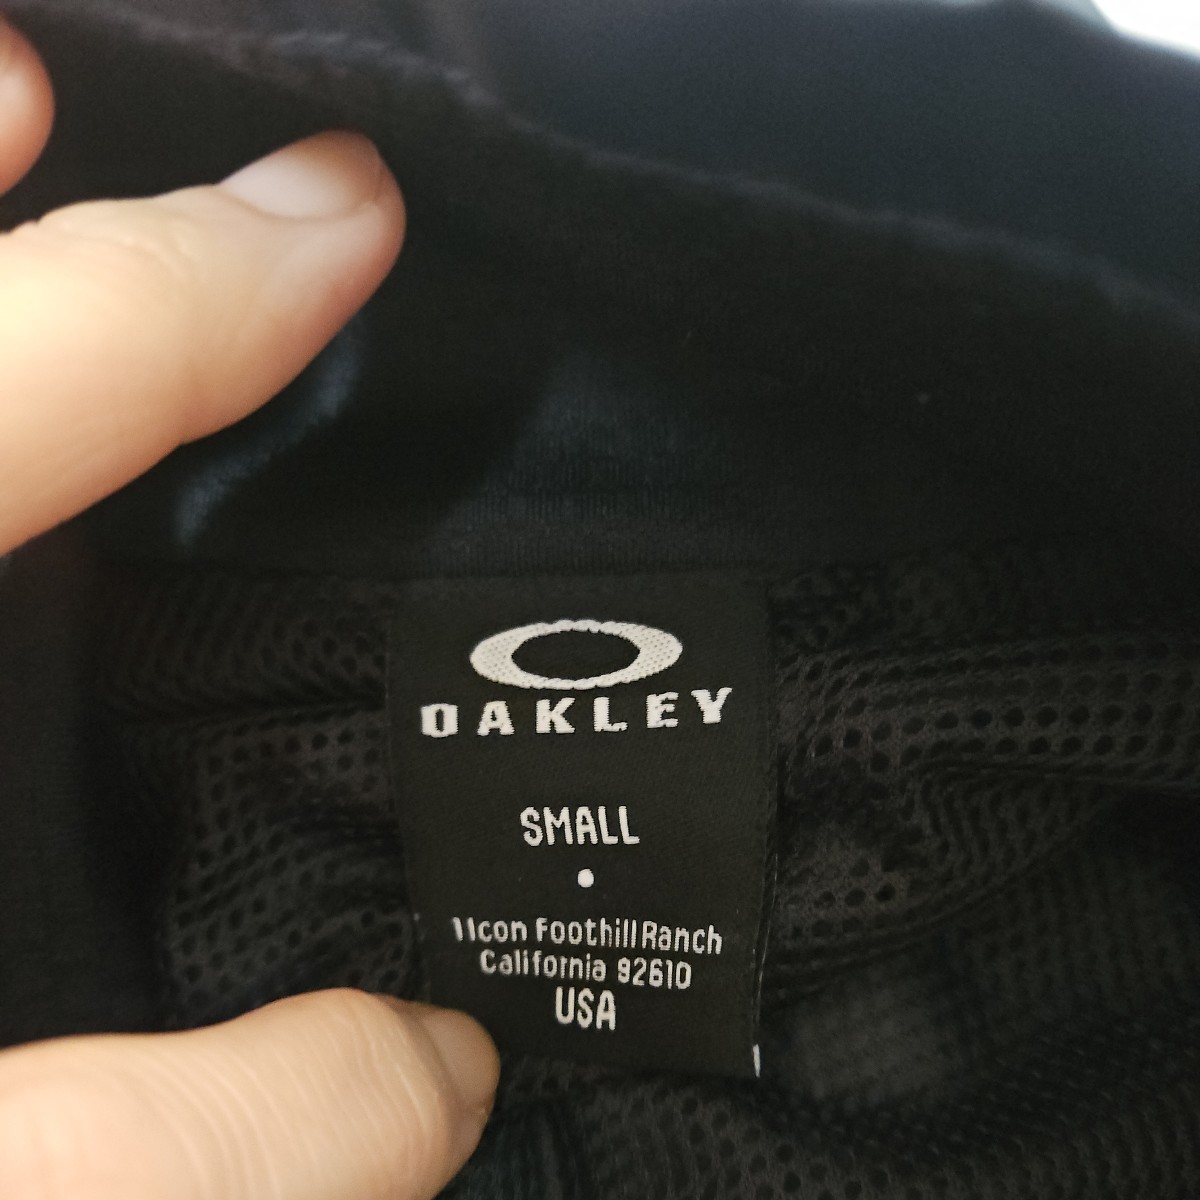 OAKLEY Oacley nylon jacket navy green black mesh lining S